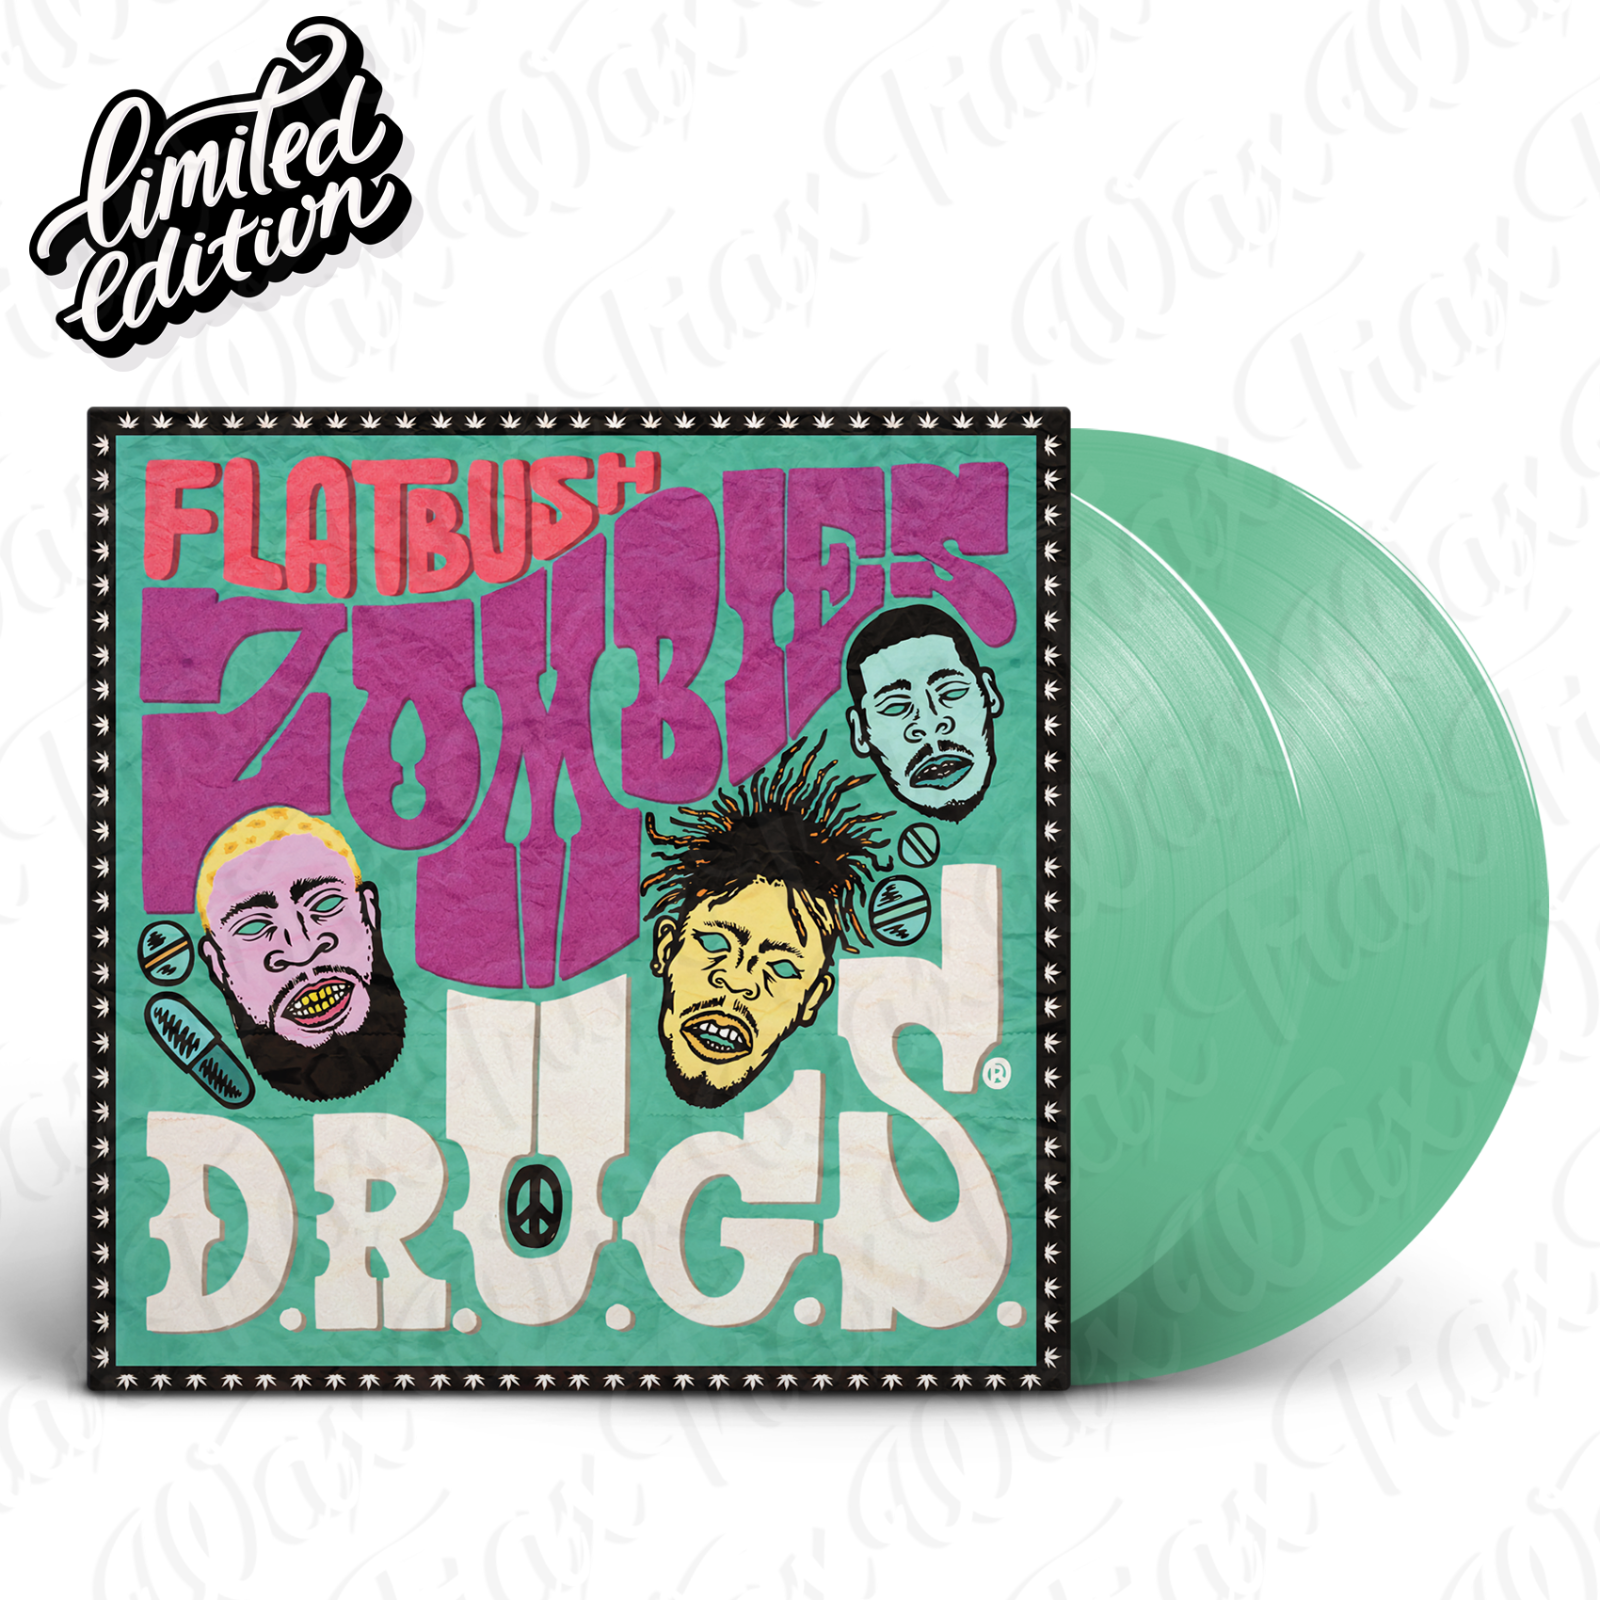 popsike.com - Flatbush - D.R.U.G.S [2LP] Vinyl Limited Edition 2019 Drugs - details